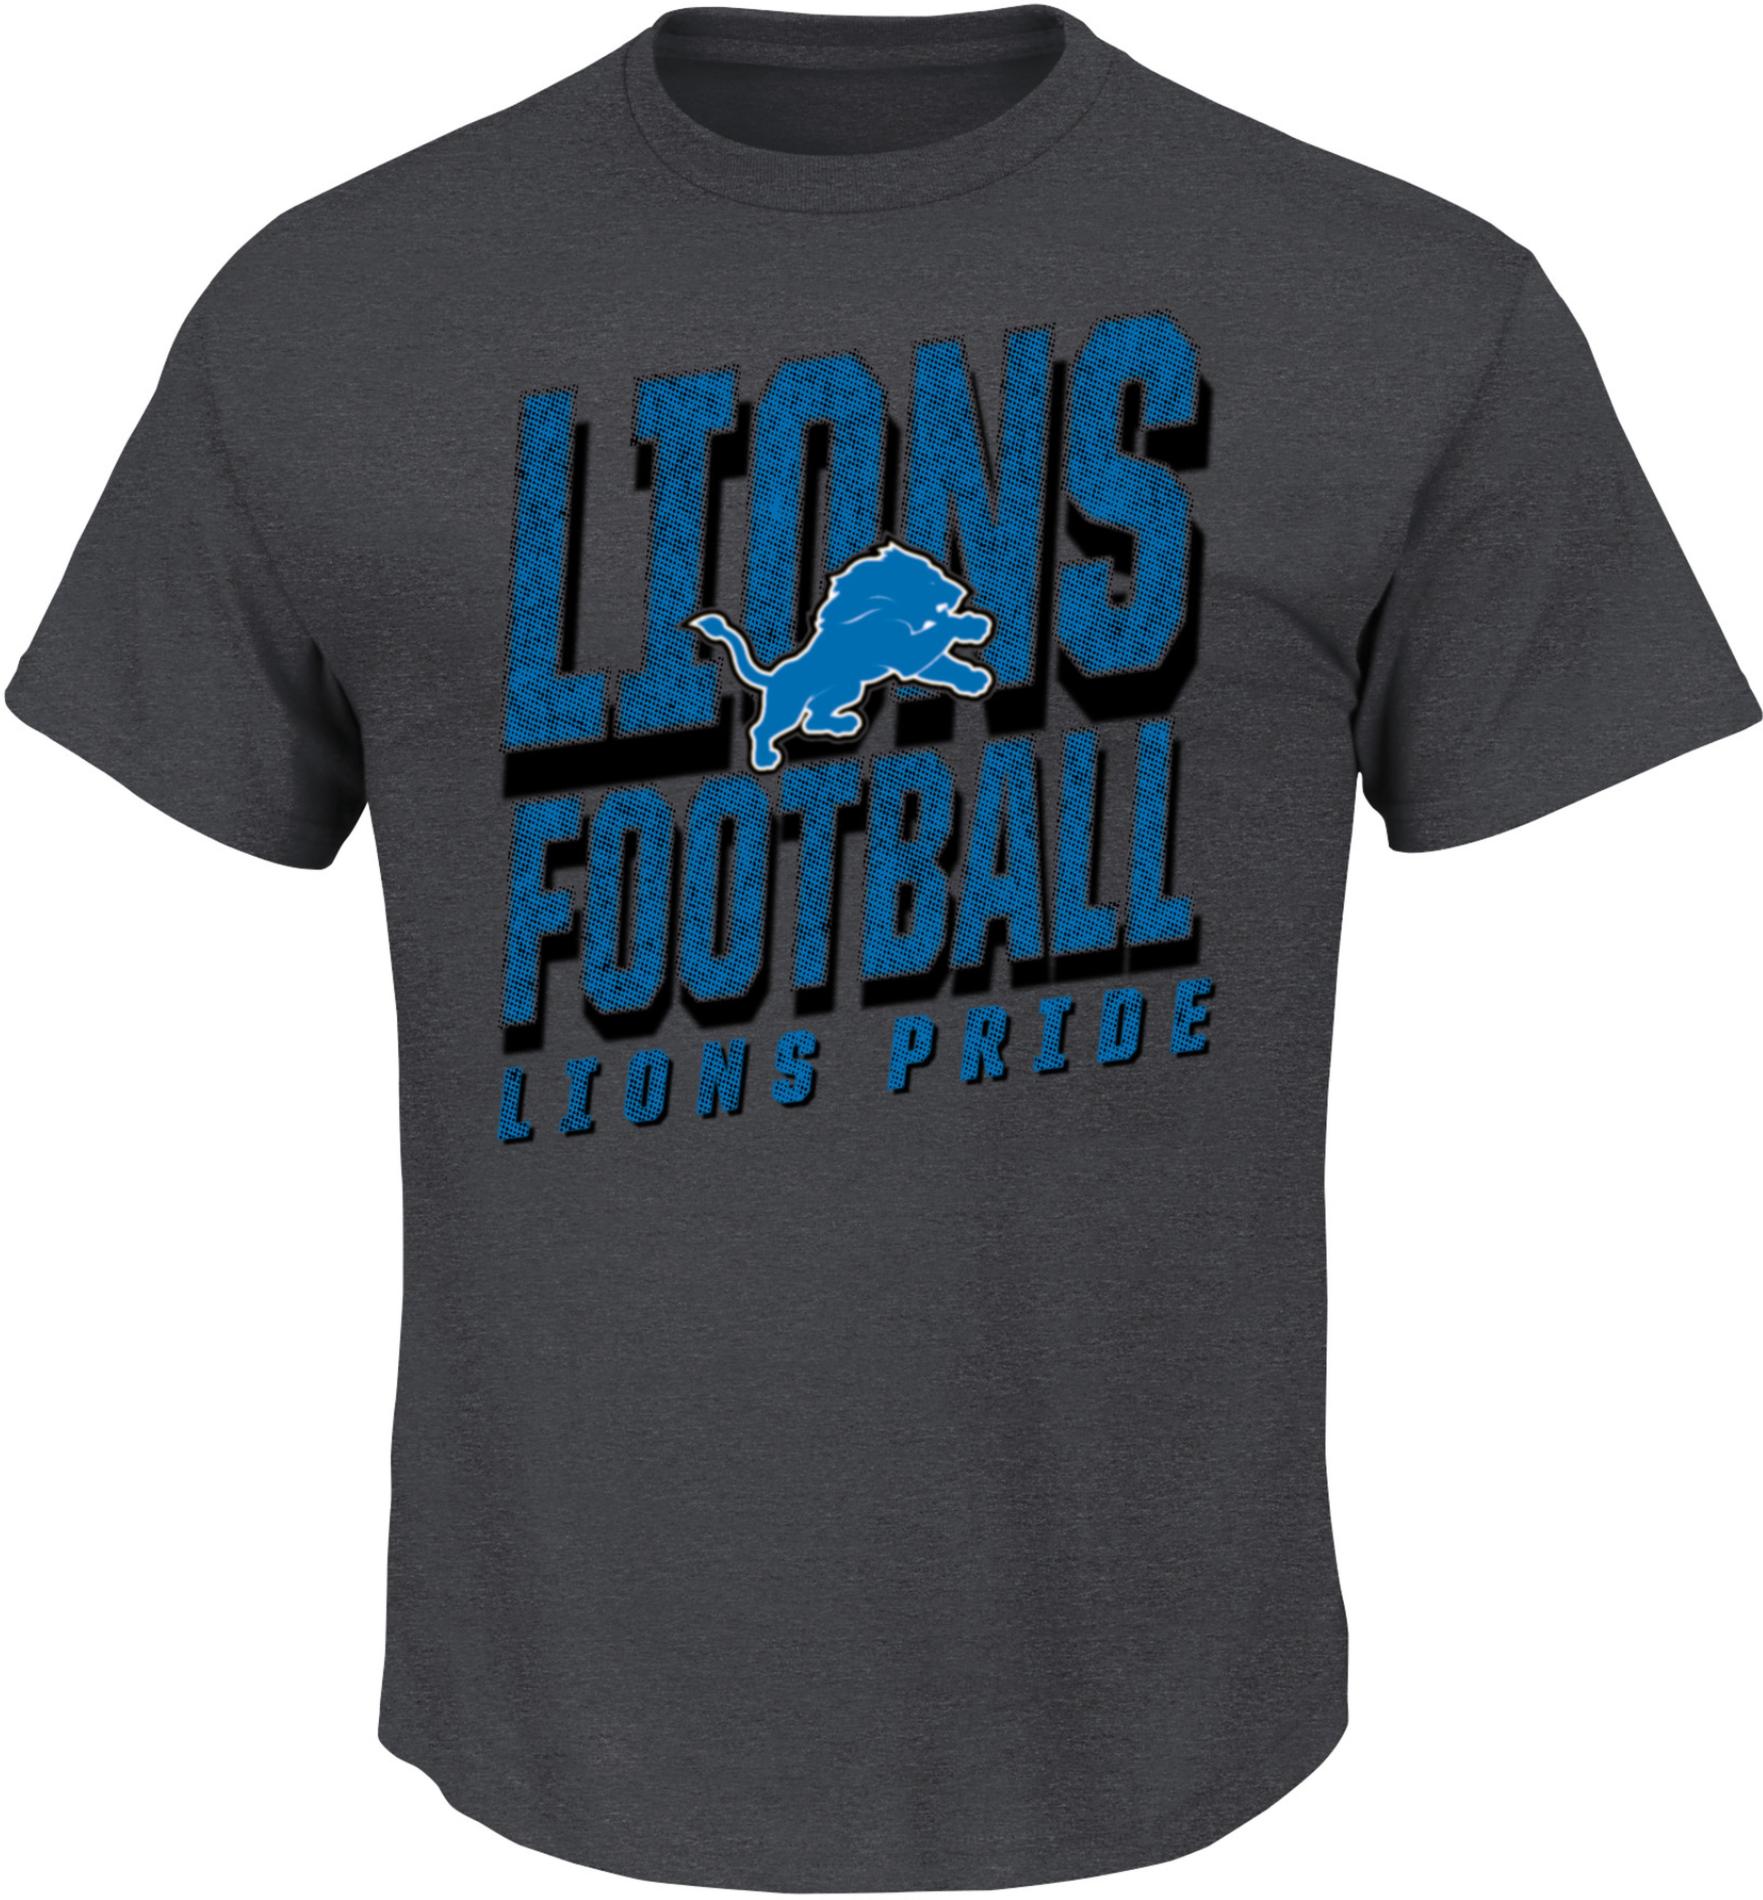 NFL Men's Short-Sleeve T-Shirt - Detroit Lions